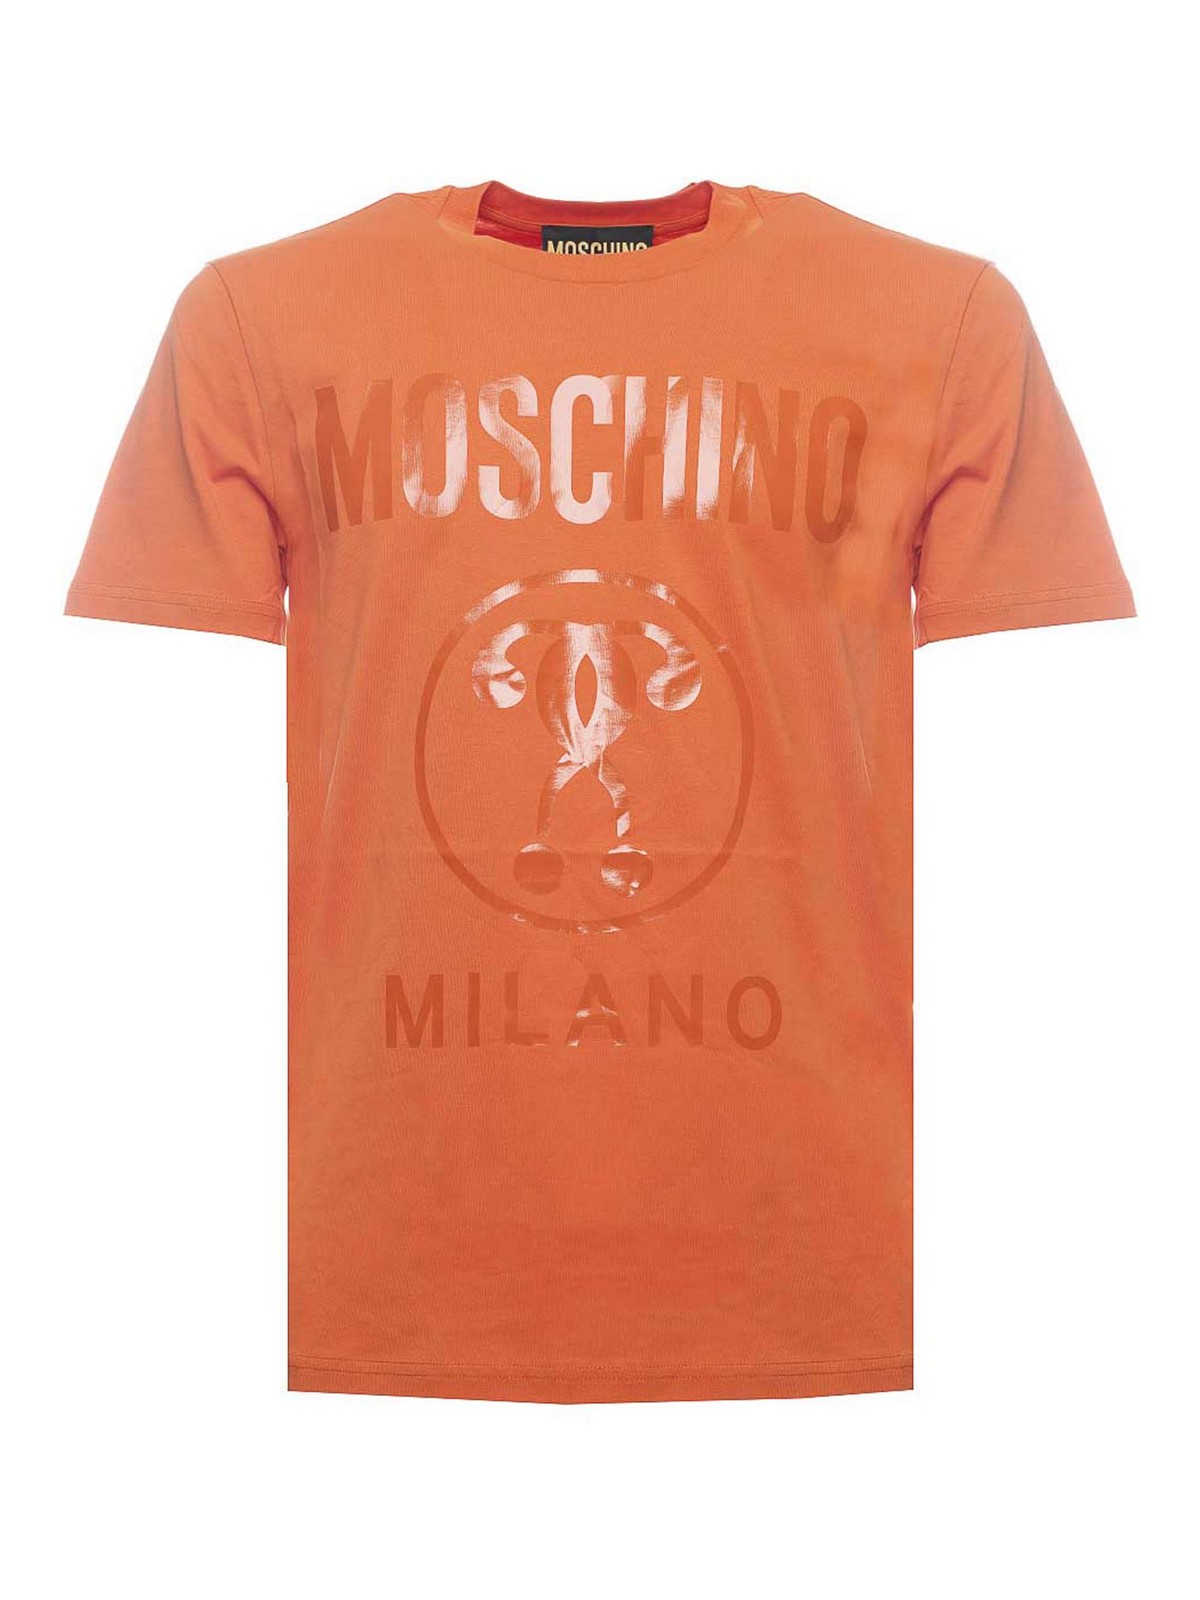 Moschino Orange T-shirt